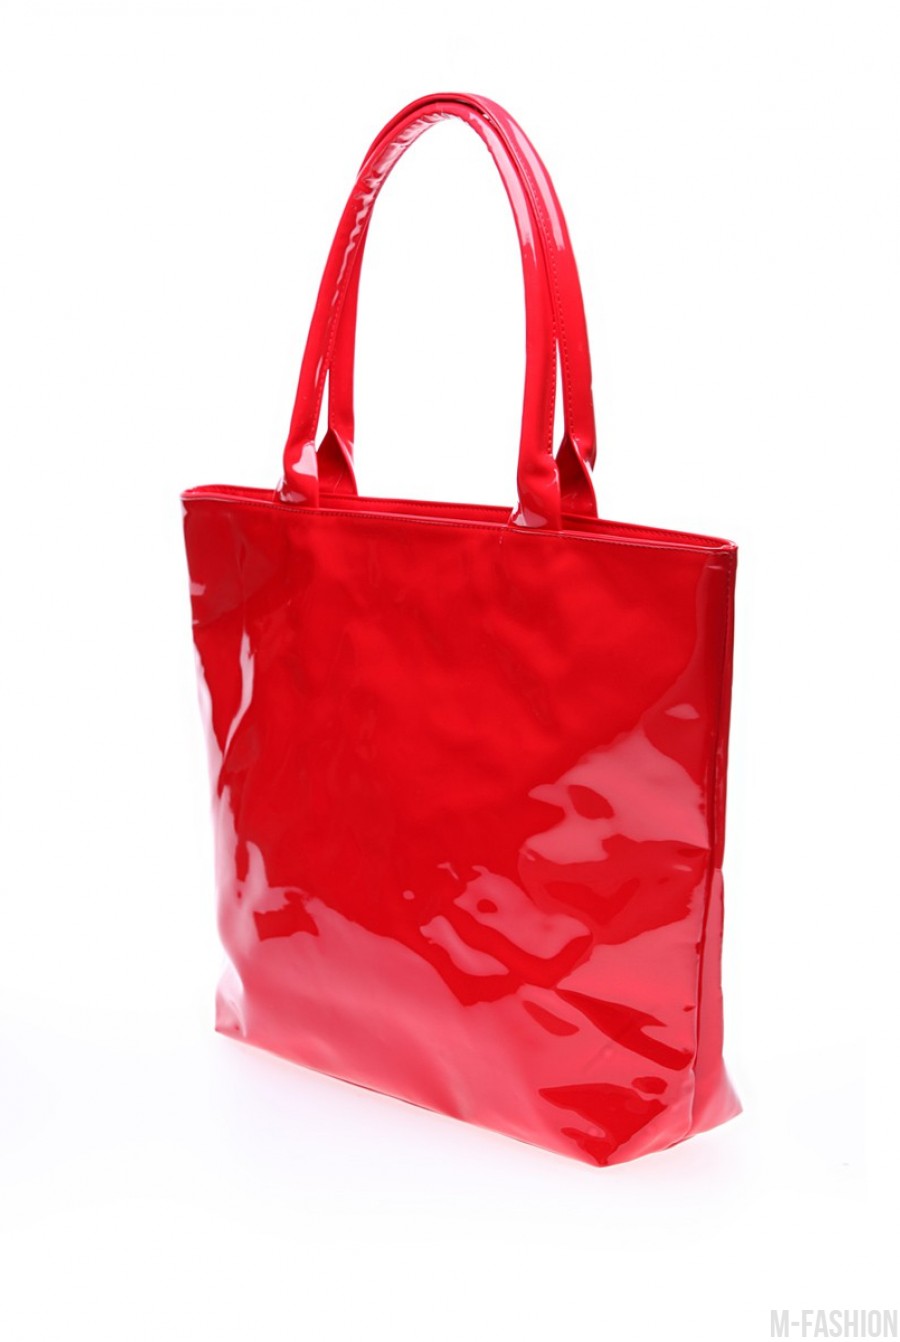 Красная лаковая сумочка для яркого образа- Фото 2